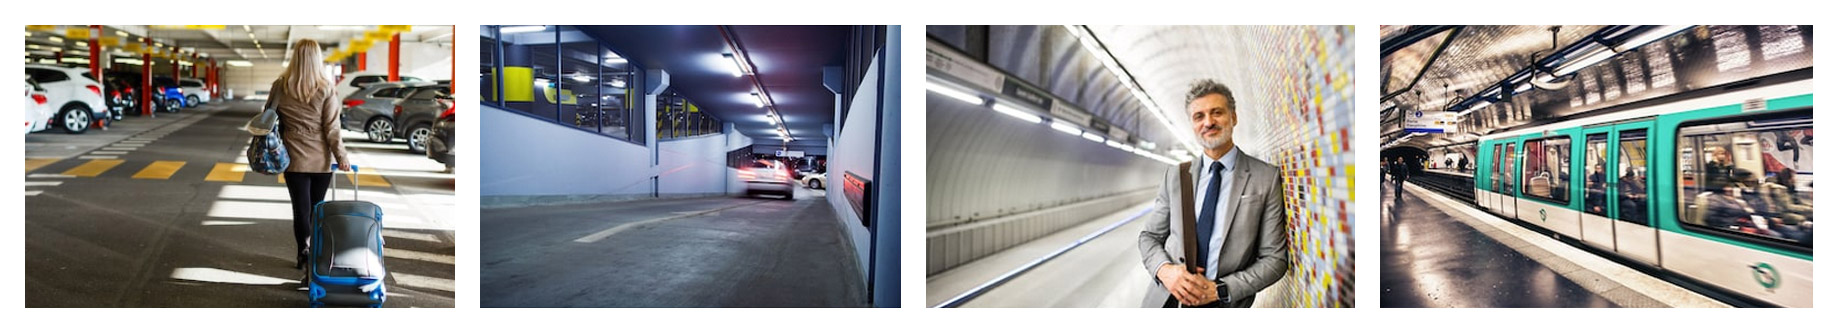 Réglettes intégrées LED utilisées dans les parkings ou les métros